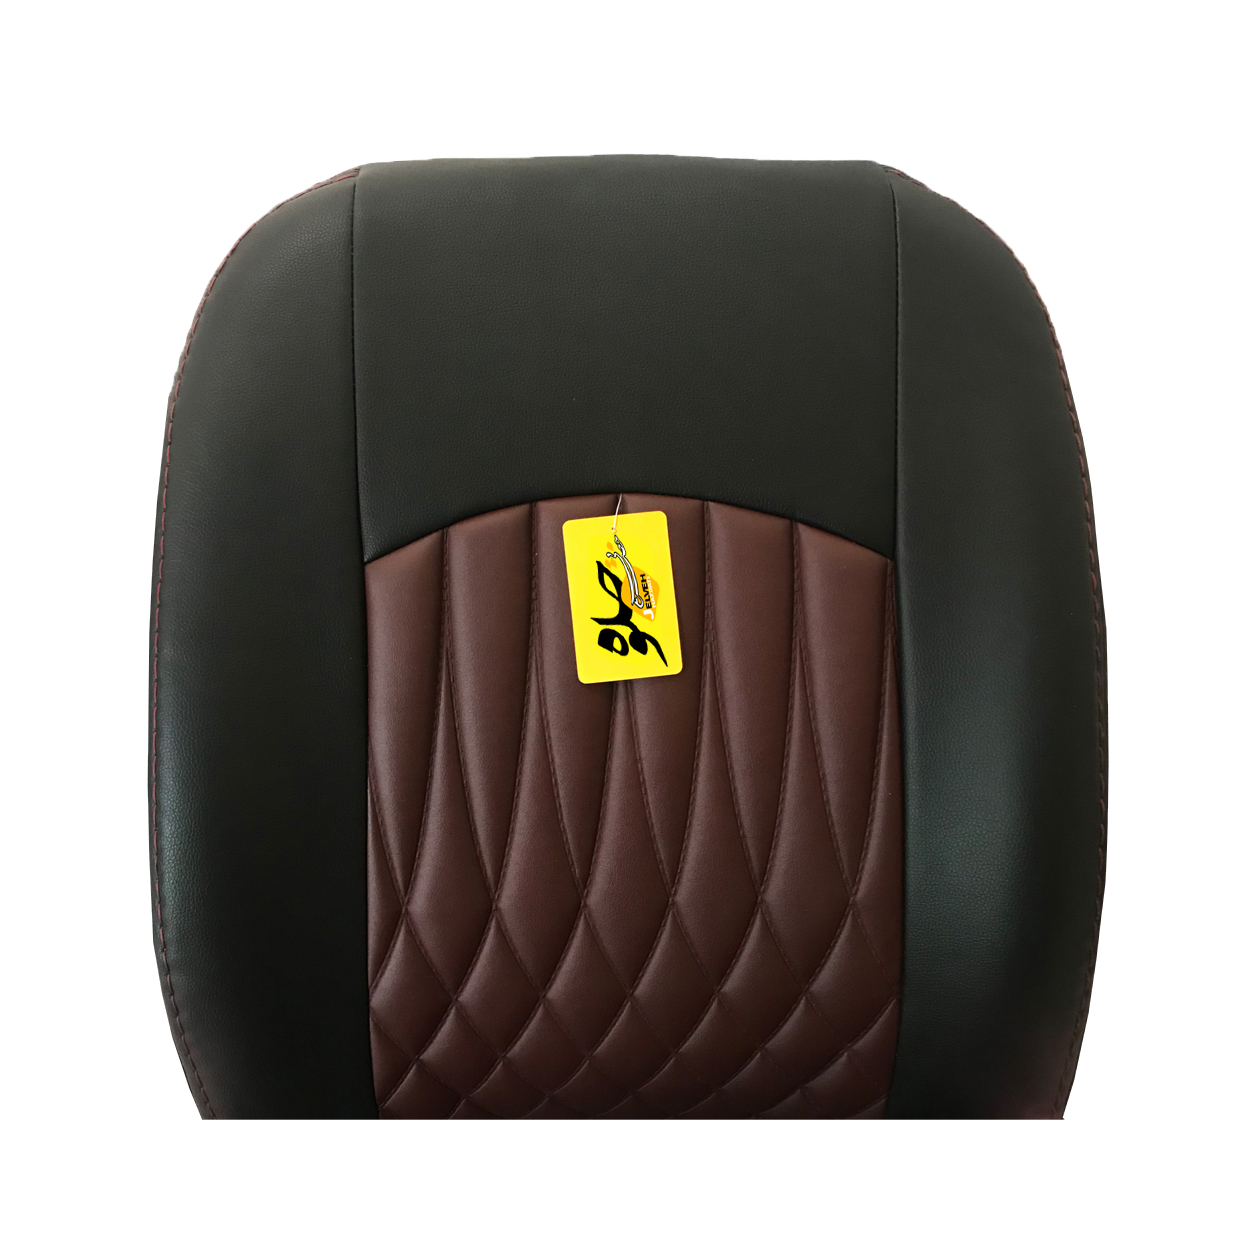 روکش صندلی خودرو جلوه مدل BG14 مناسب برای دانگ فنگ H30 کراس